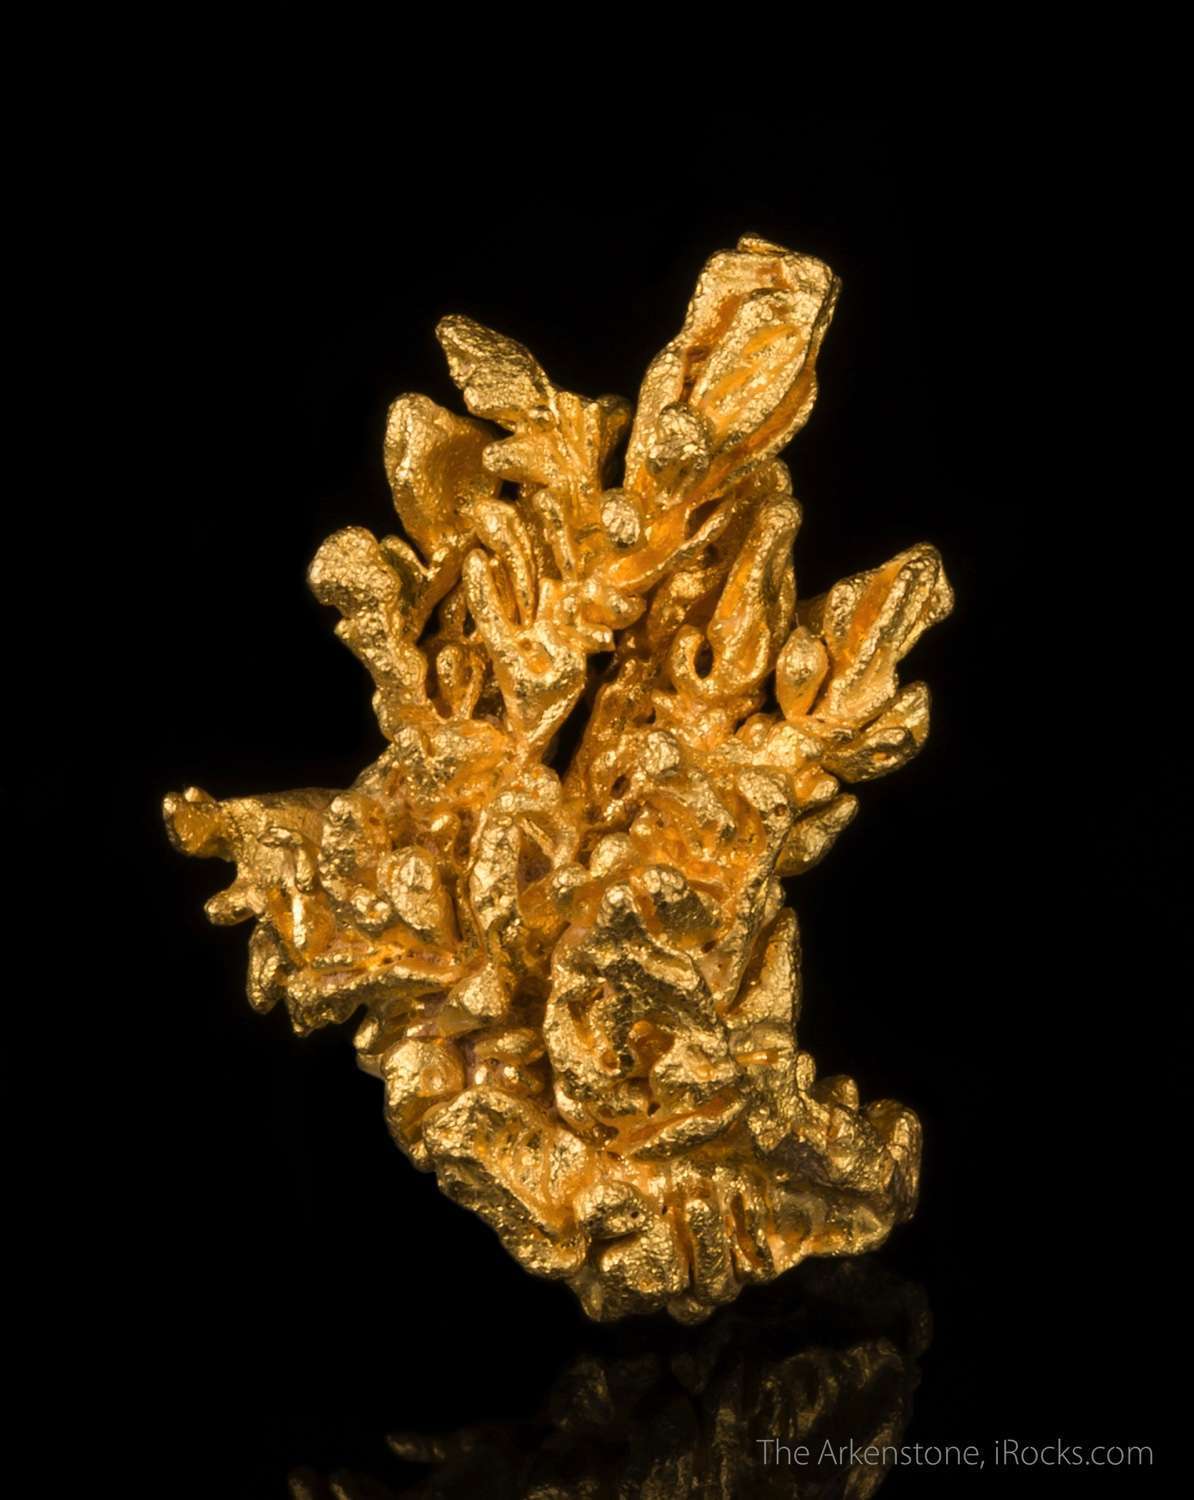 Golden Minerals